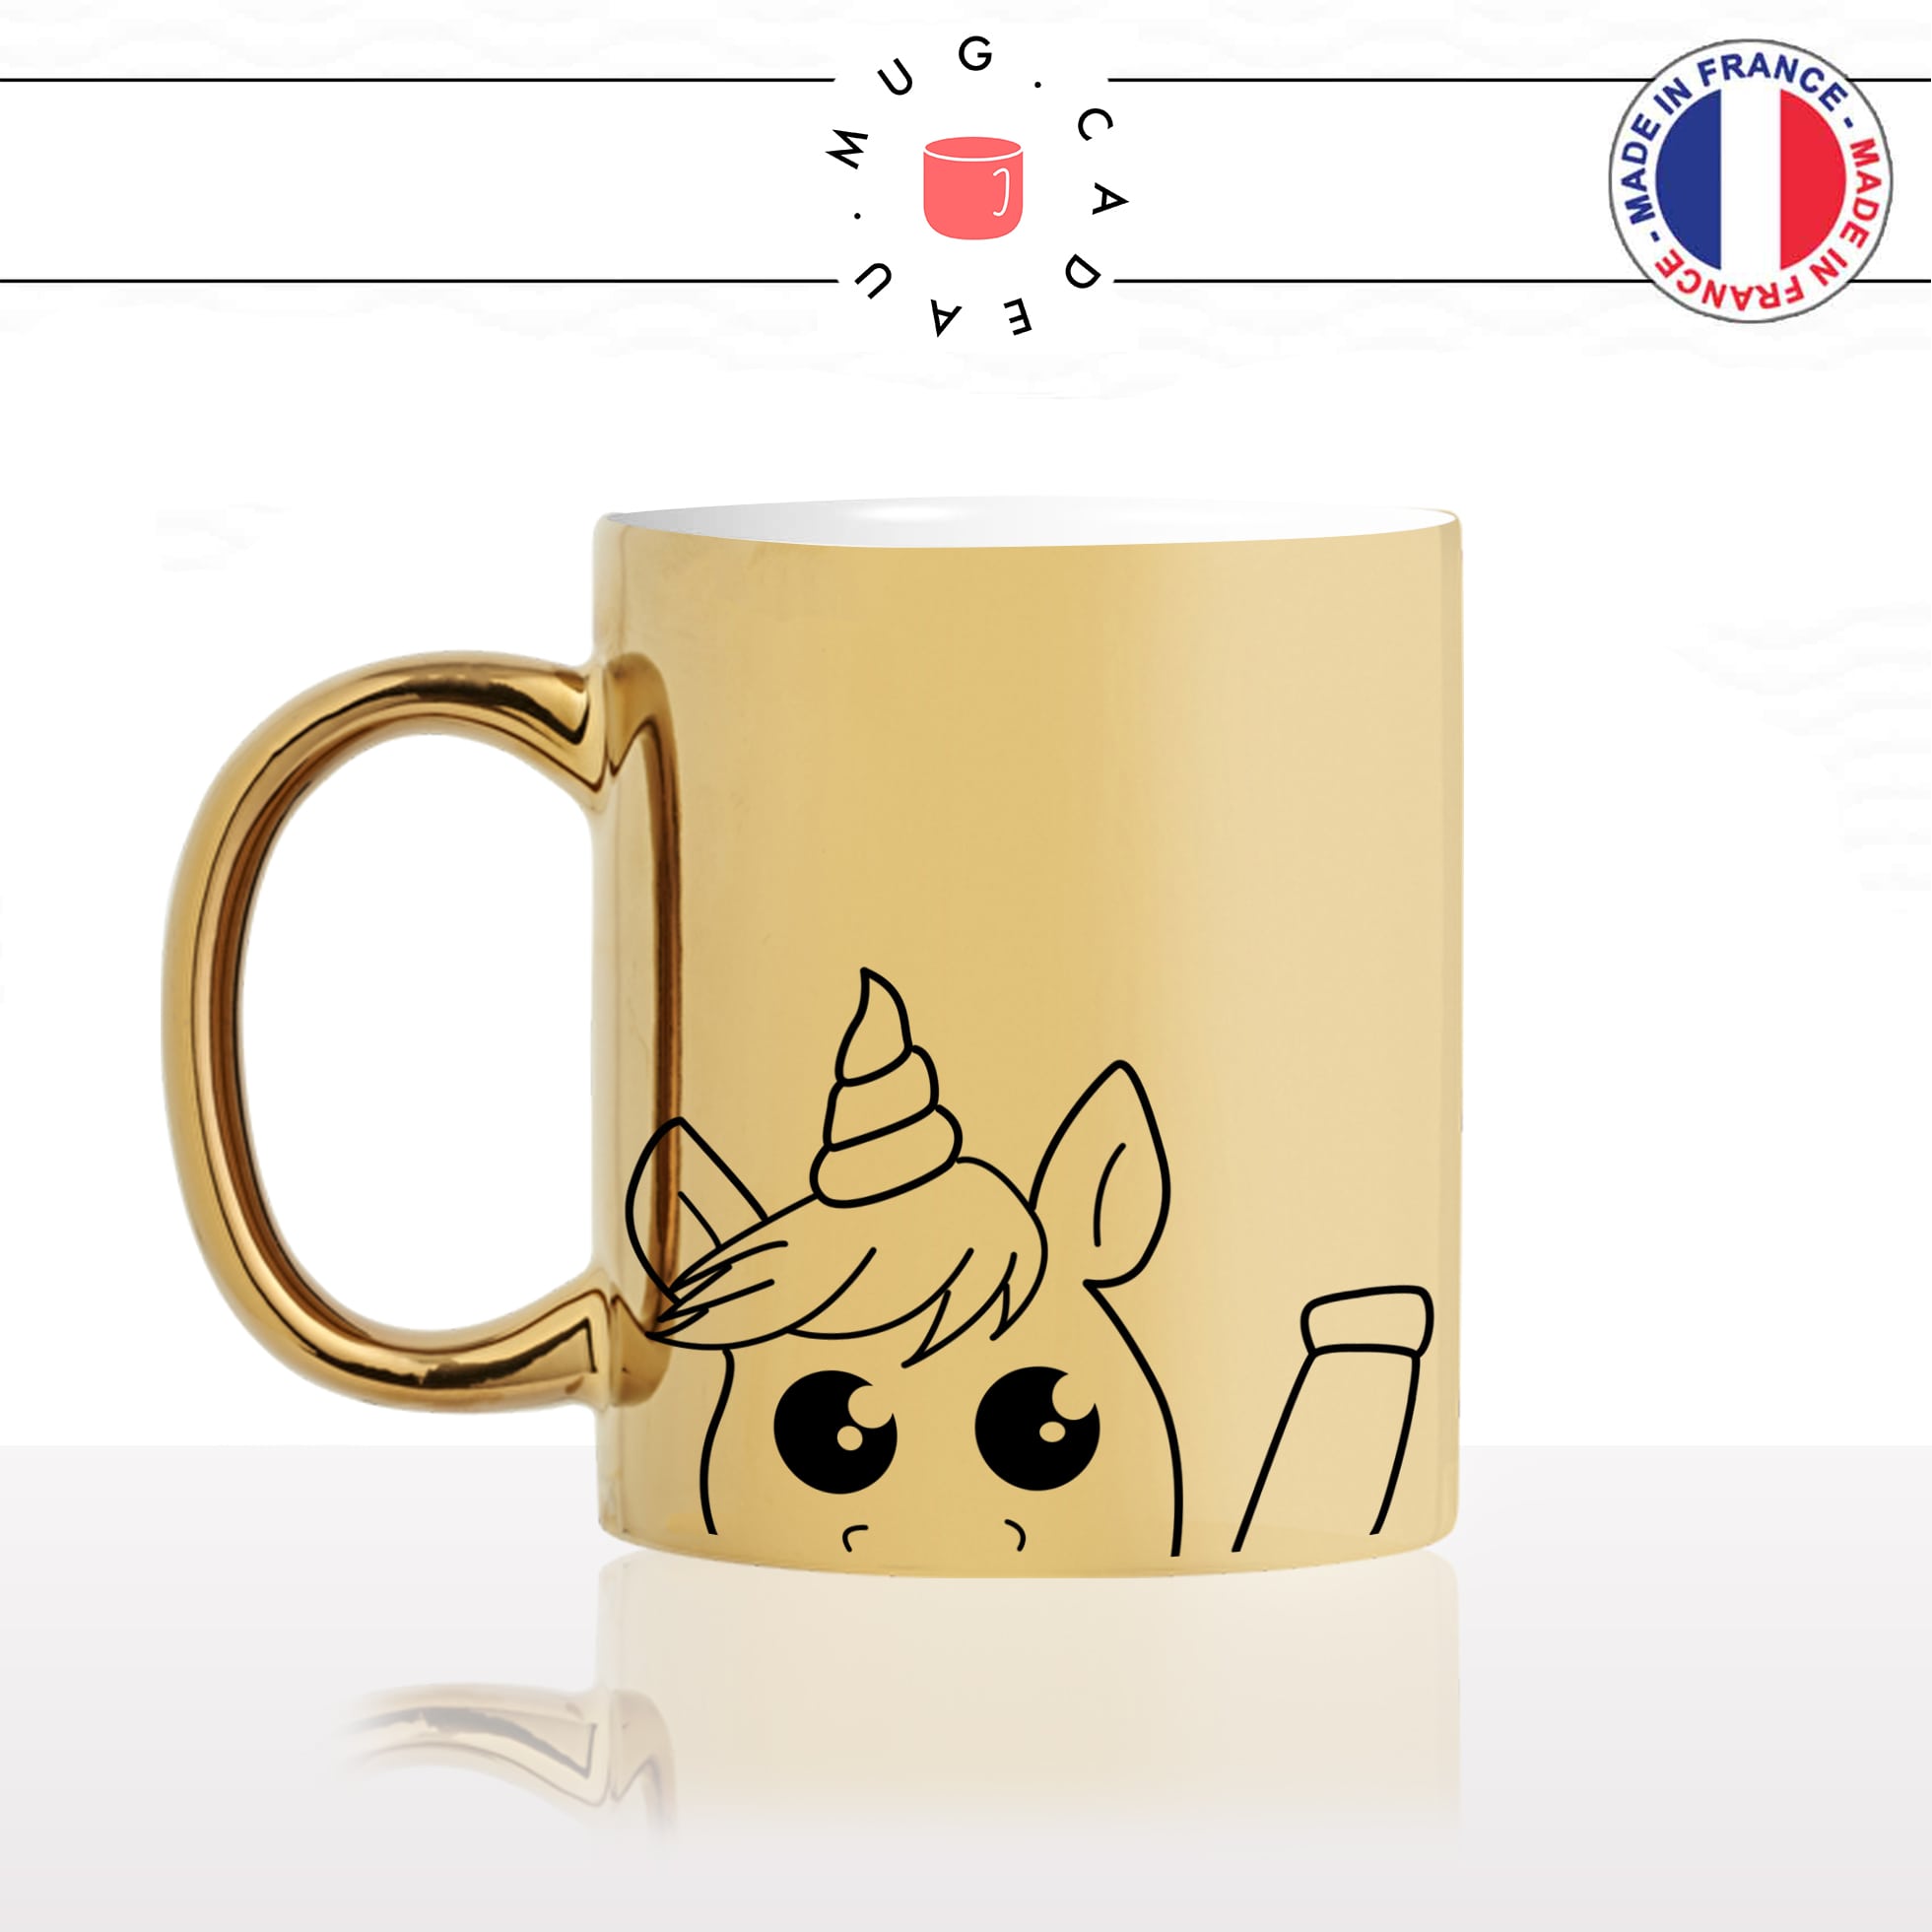 mug-tasse-or-doré-licorne-enfant-coucou-dessin-drole-mignon-animal-noir-fun-café-thé-idée-cadeau-original-personnalisé-gold-min